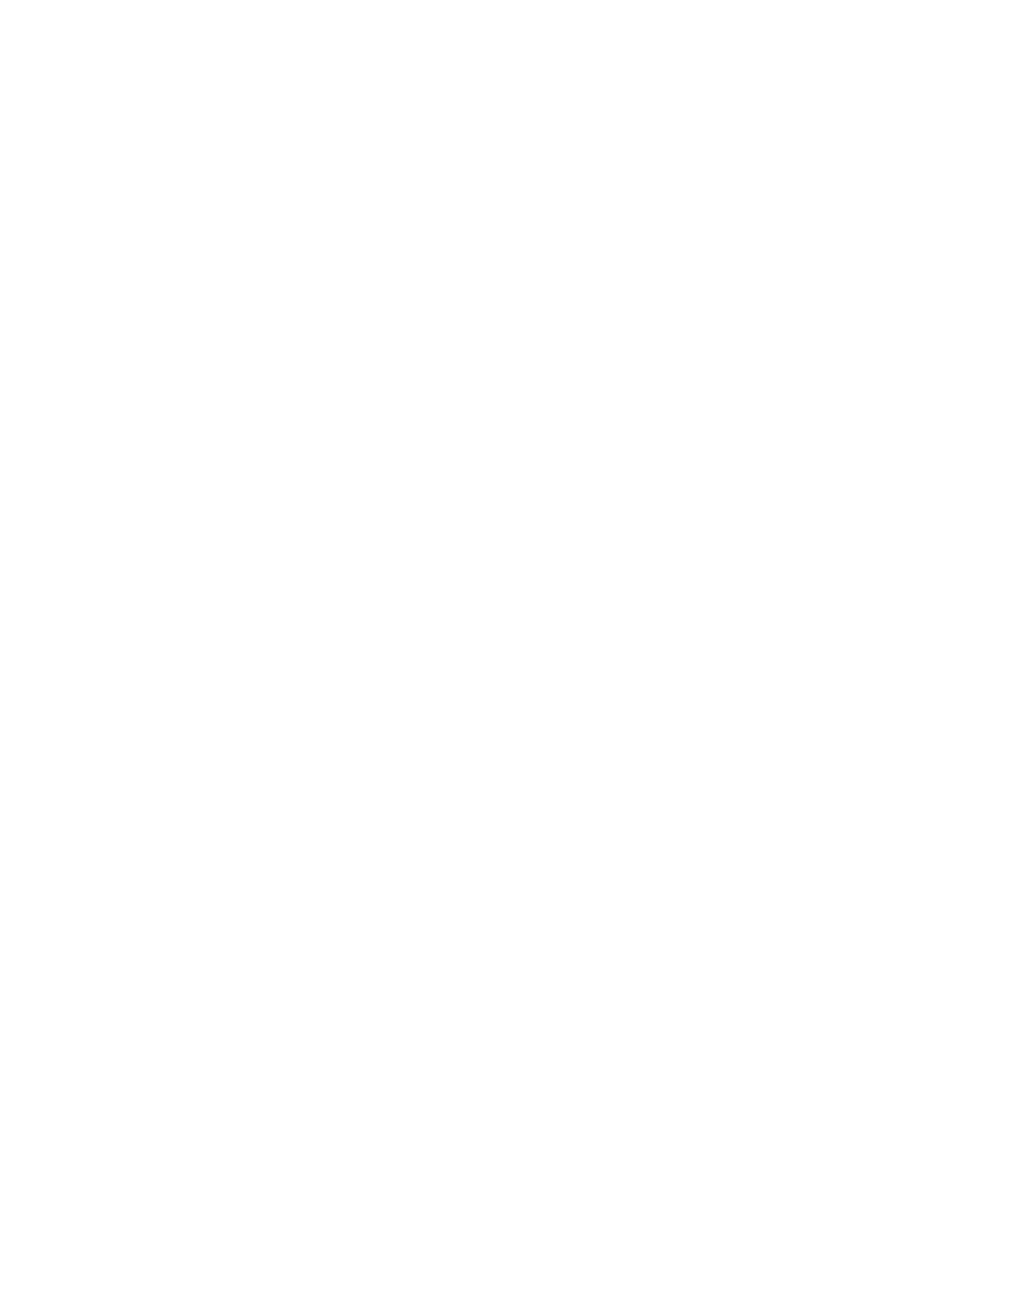 RE/MAX Preferred, W.C.